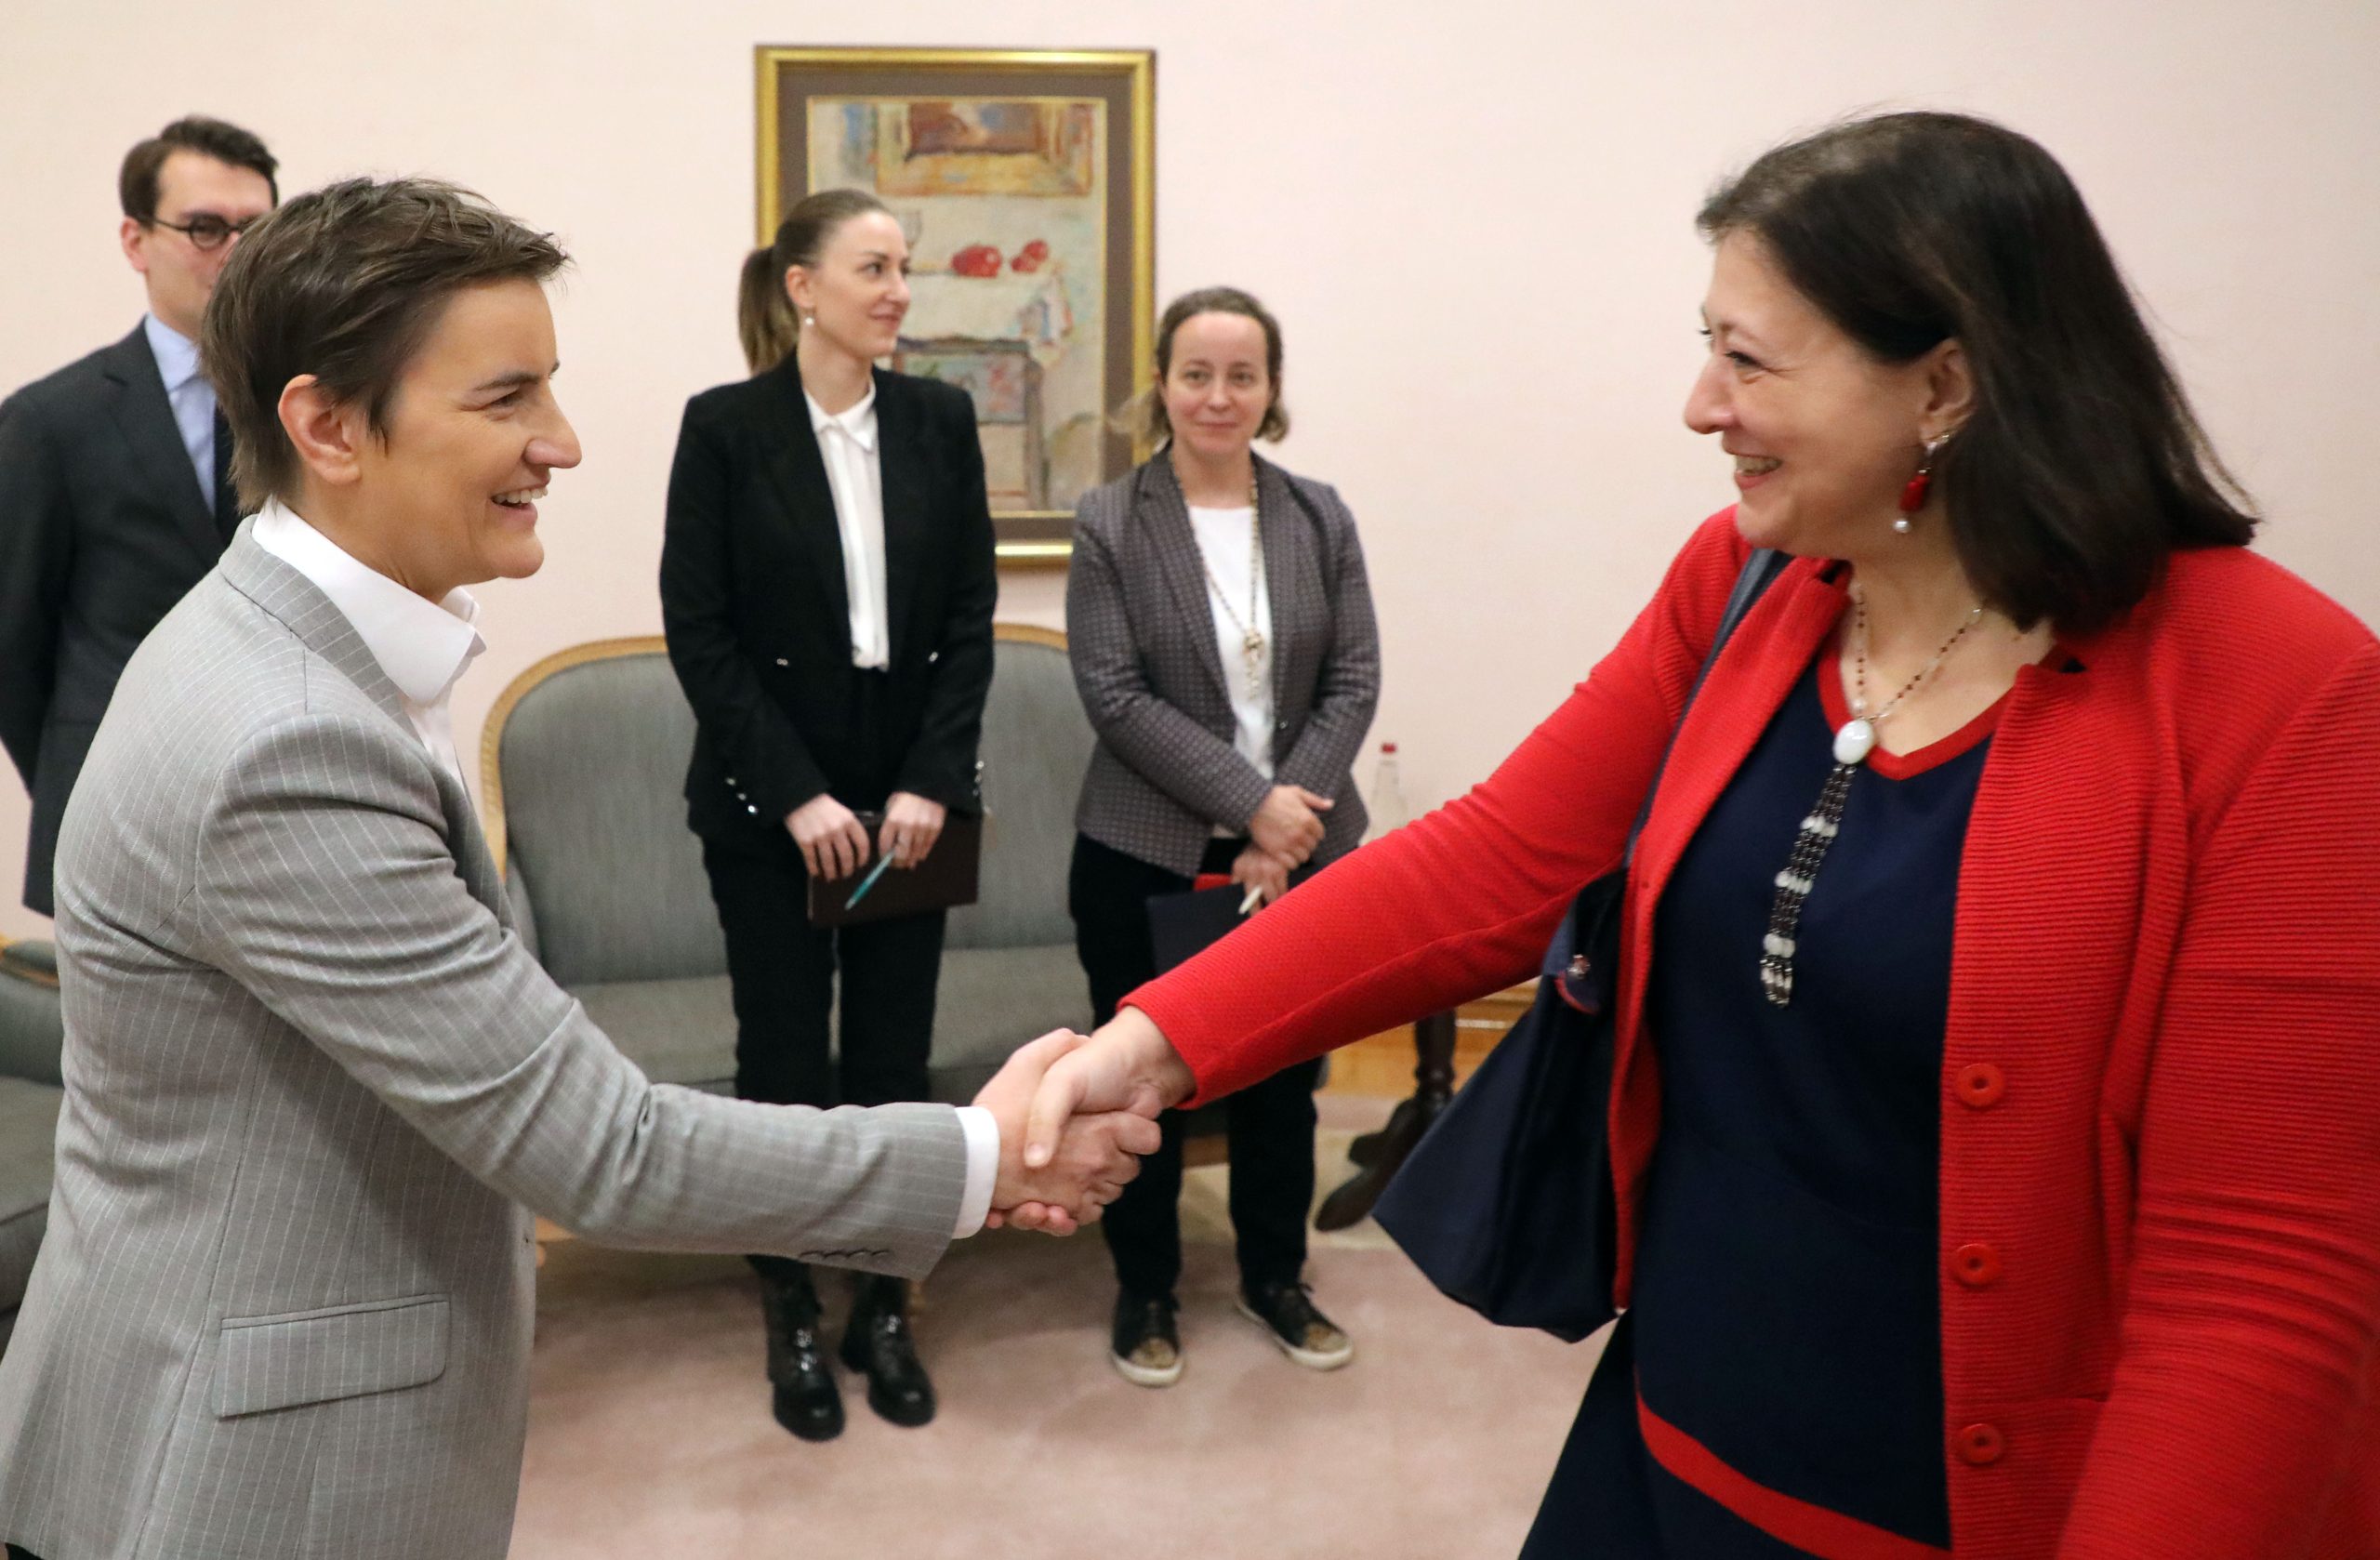 NEOPHODNO JE JAČATI INSTITUCIJE KOJE SE BAVE OVIM TEMAMA: Premijerka Brnabić razgovarala danas sa direktorkom UN za rodnu ravnopravnost!